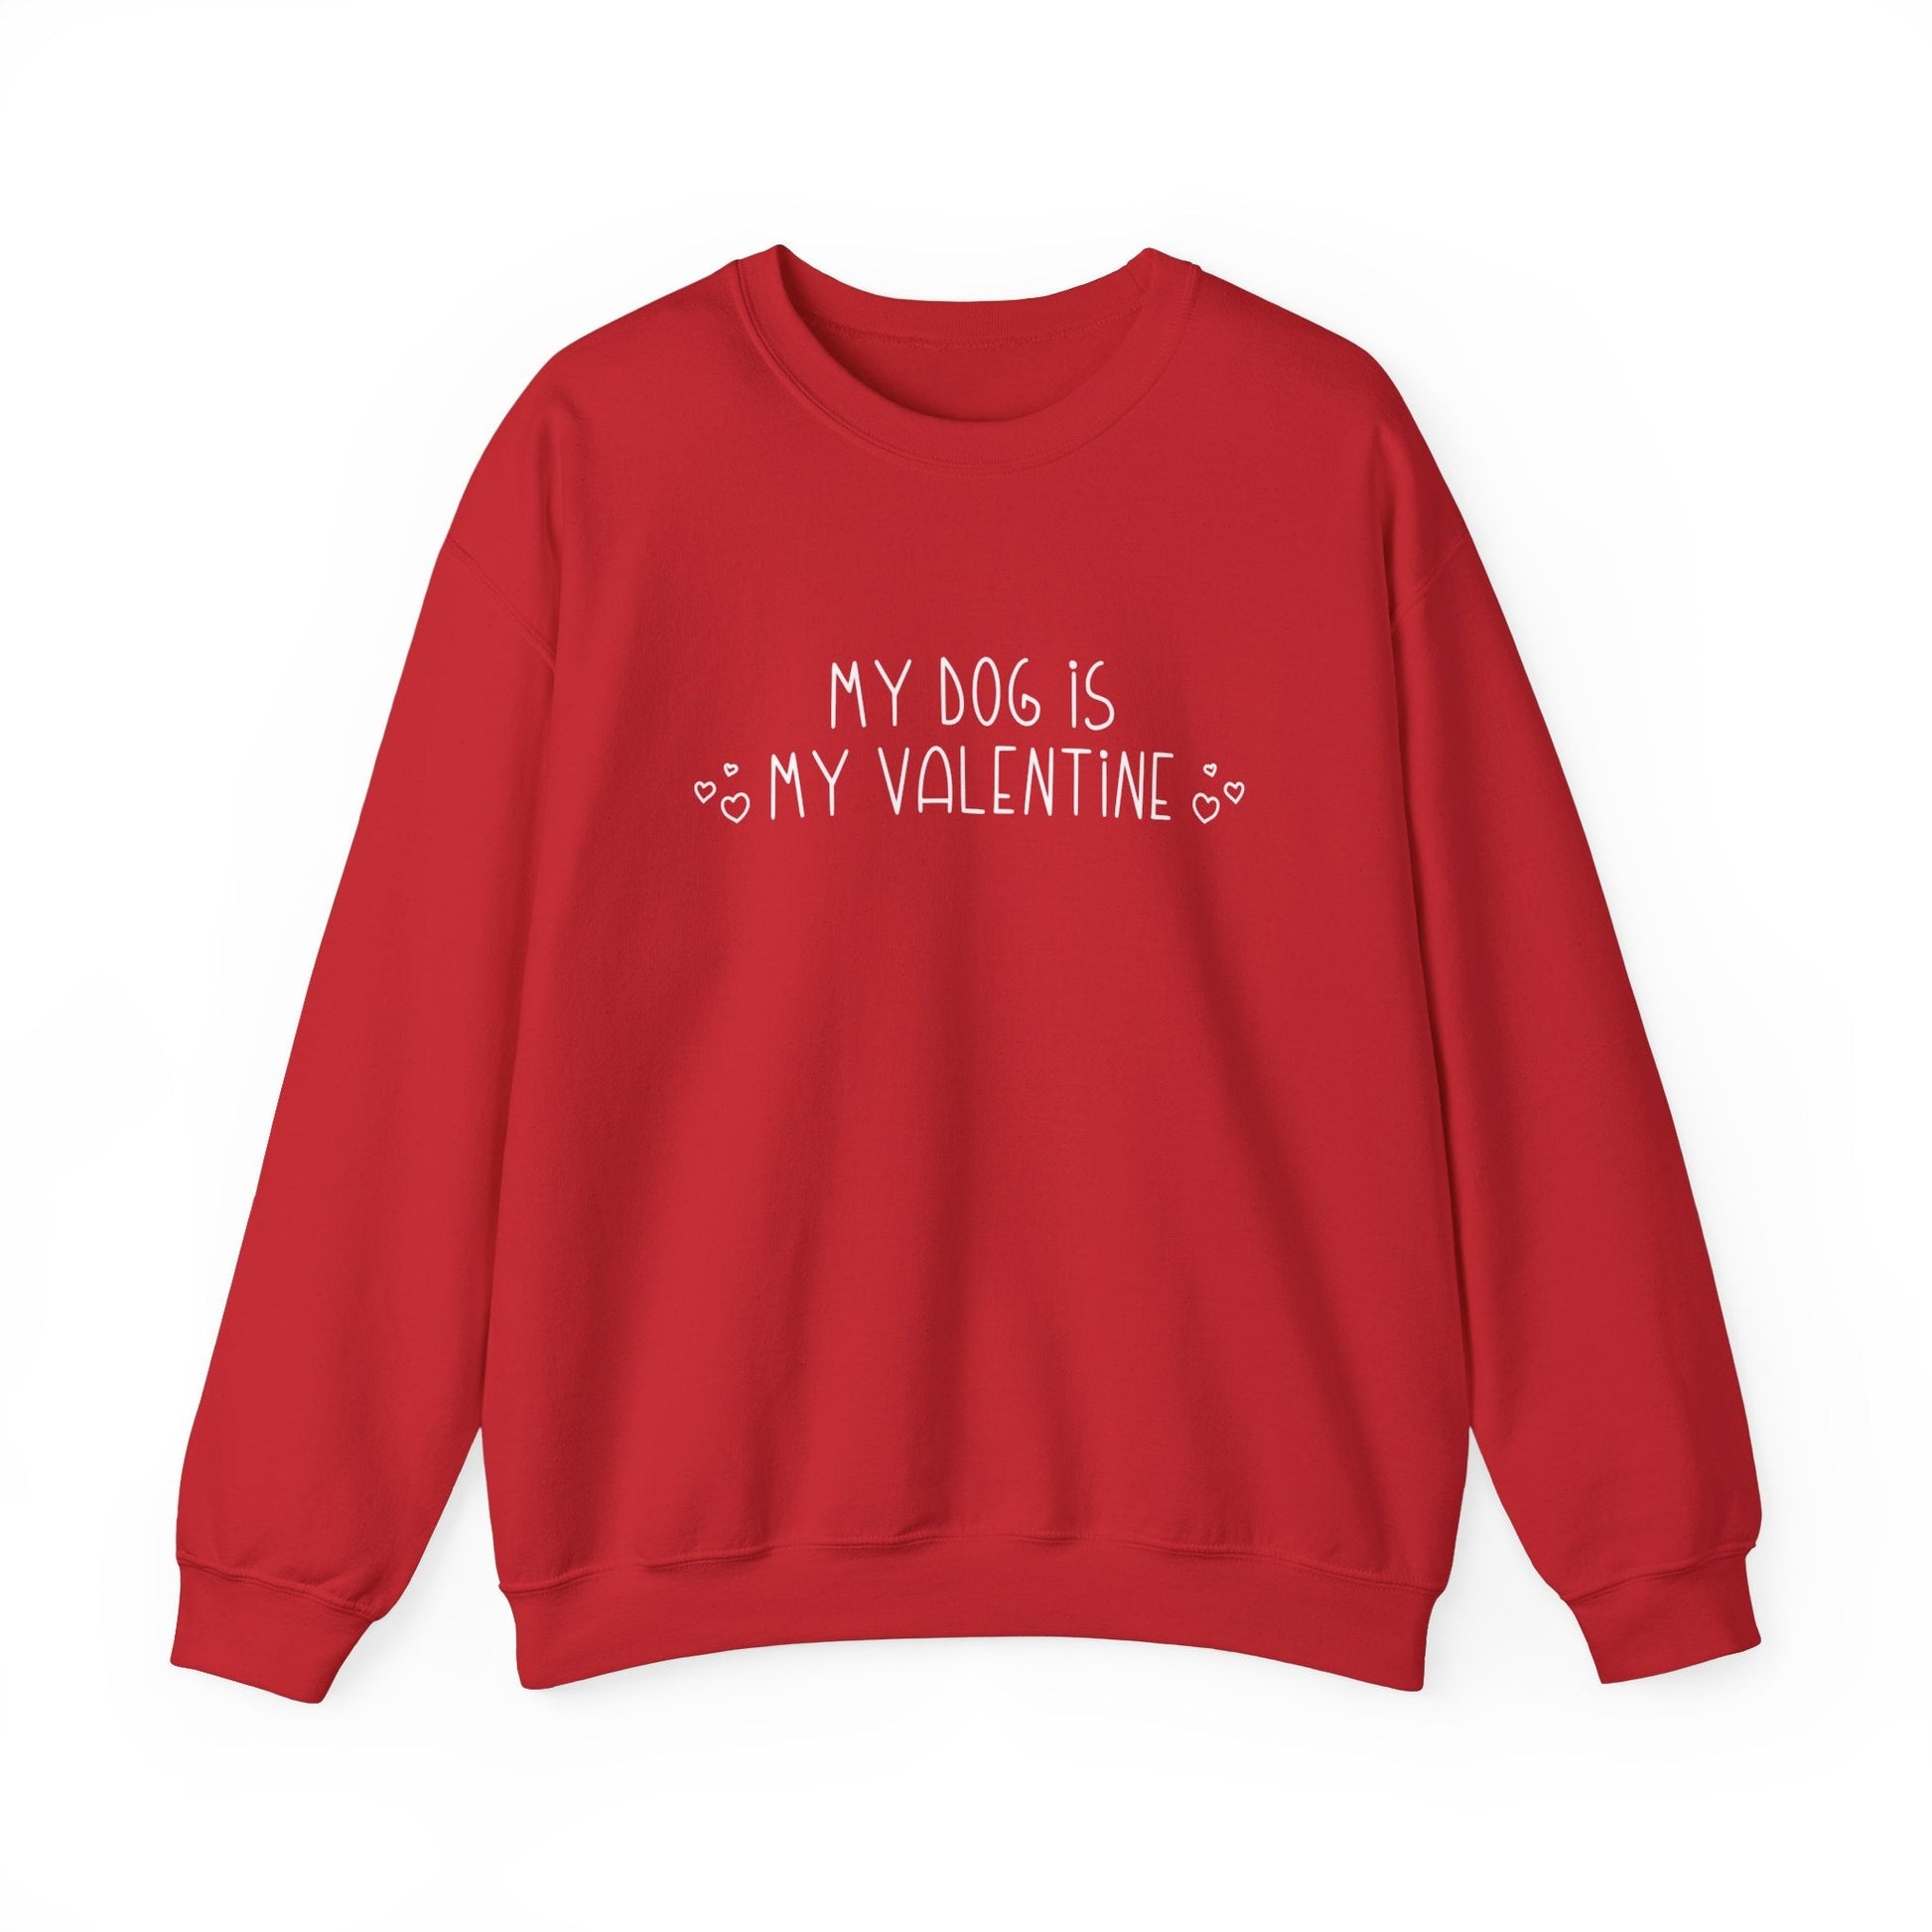 My Dog Is My Valentine | Crewneck Sweatshirt - Detezi Designs-19697940229077836415